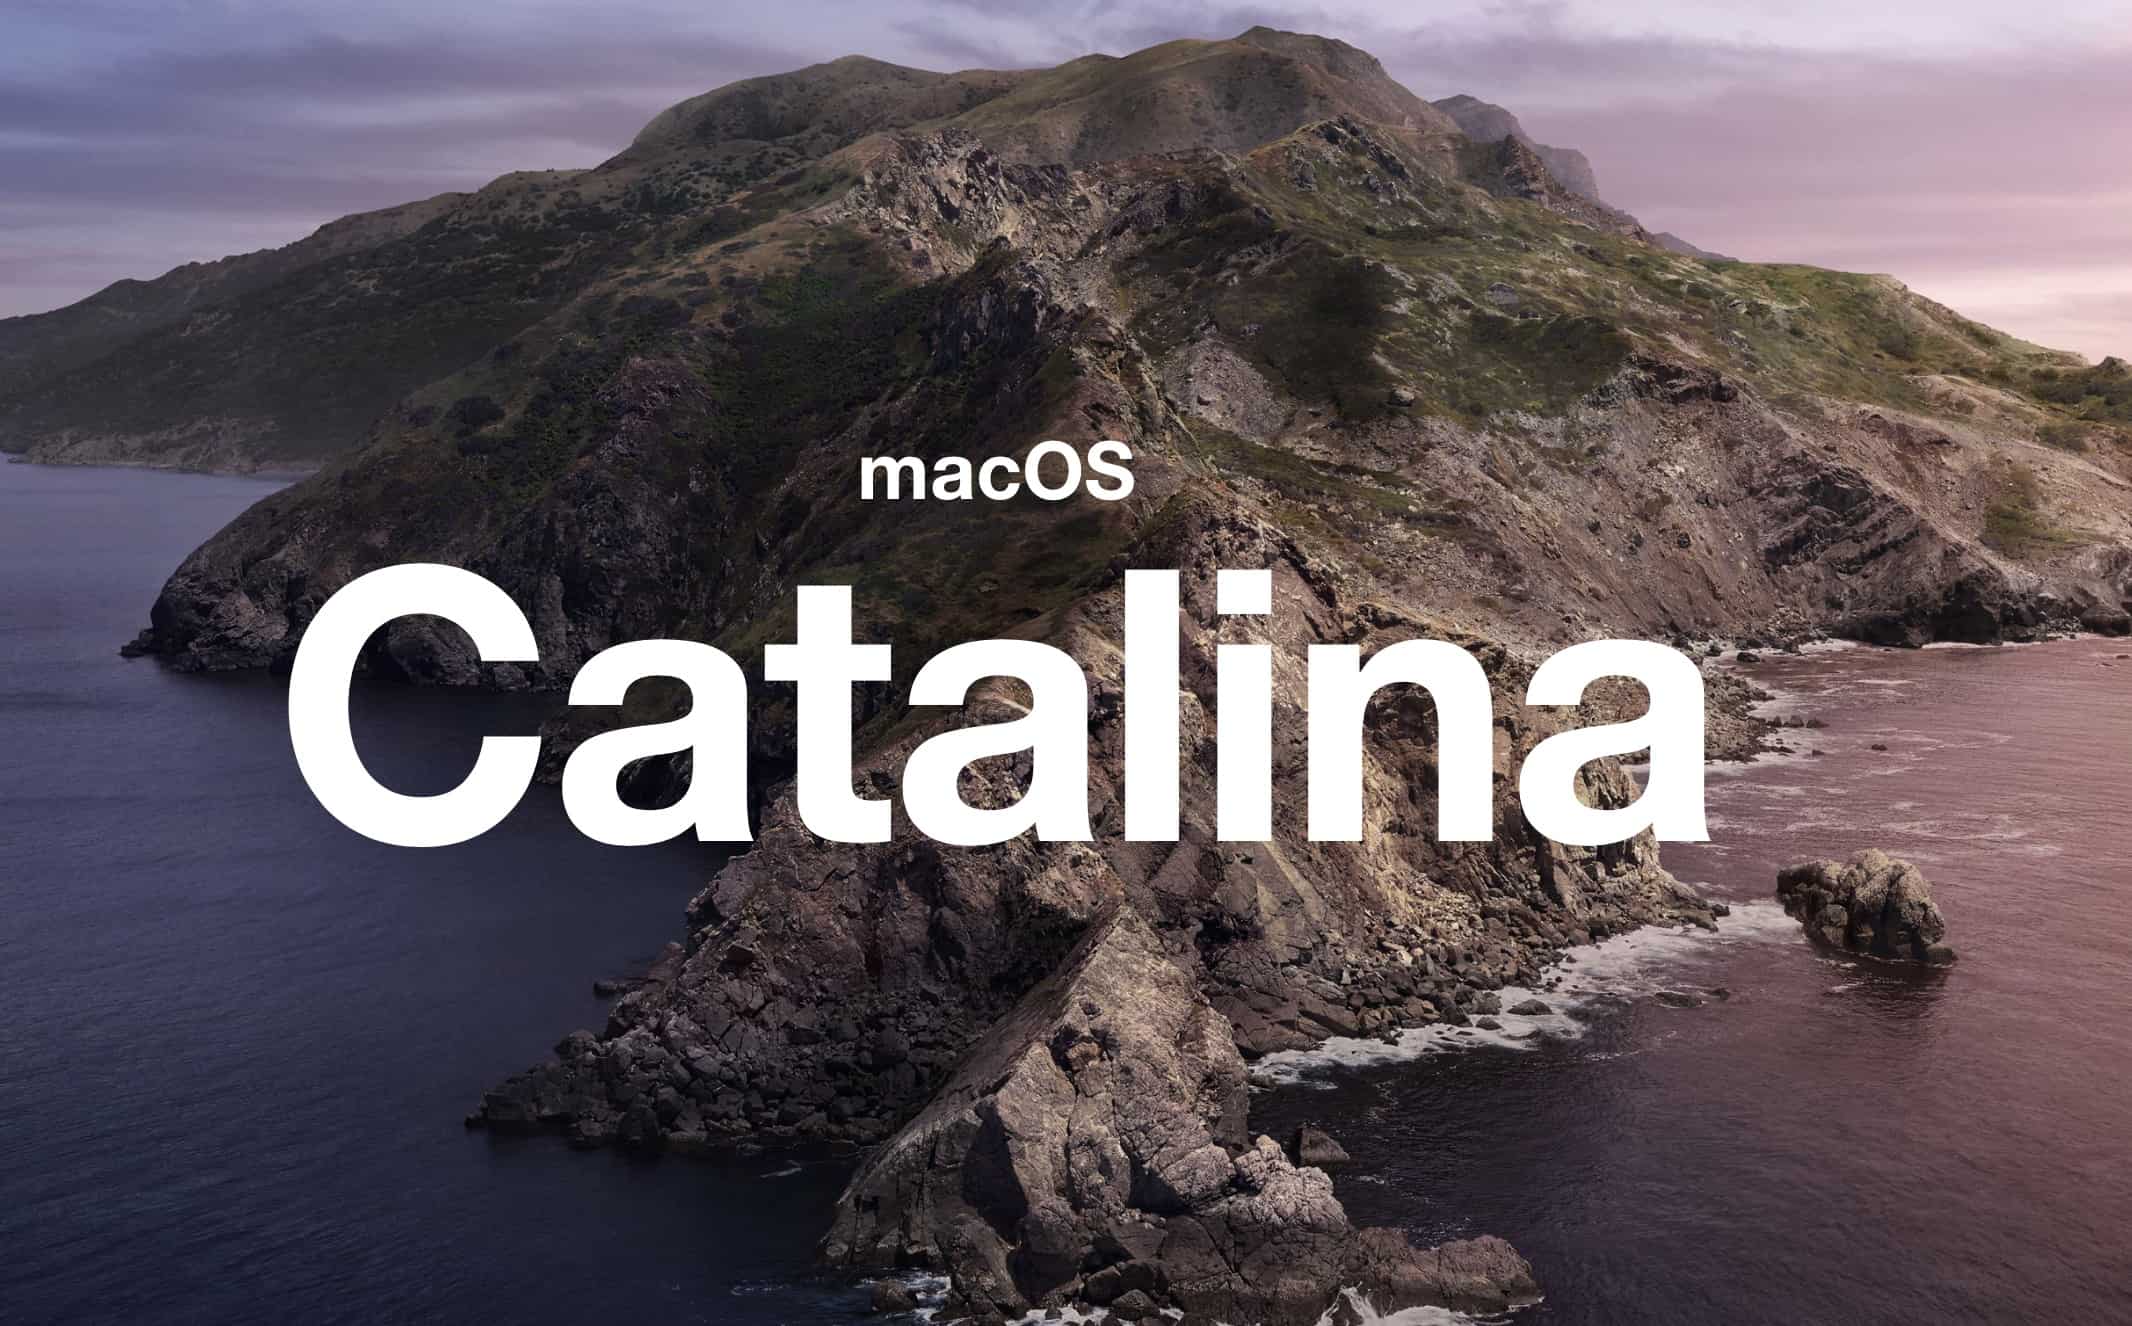 utorrent for mac catalina 10.05